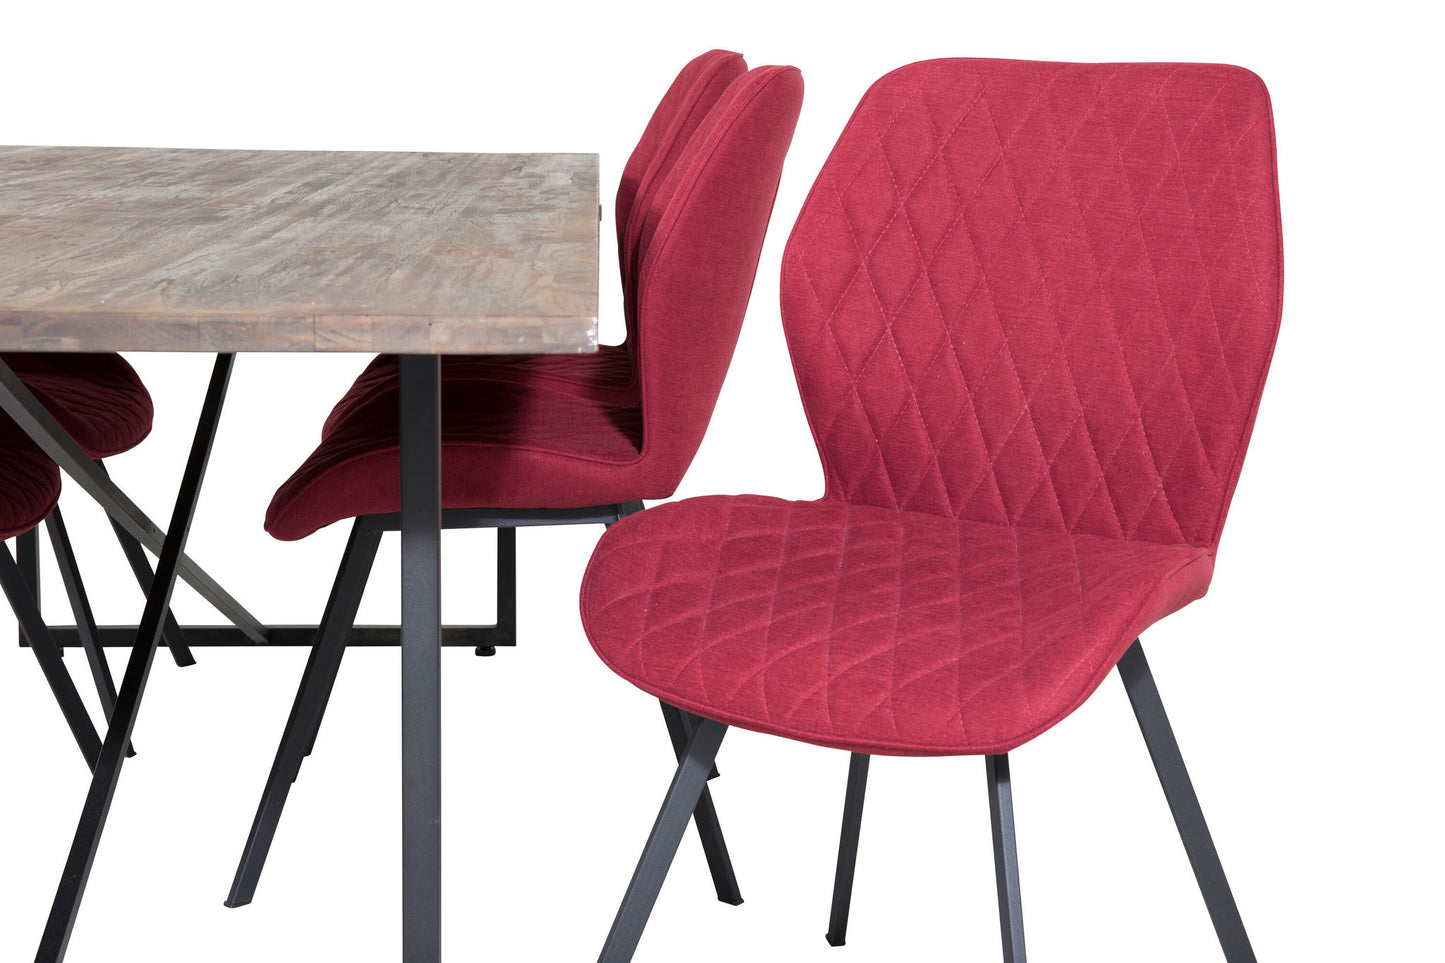 Padang - Spisebord, 250*100*H76 - Mørk Teak / Sort+Gemma Spisebordsstol - Sorte ben - Rødt stof